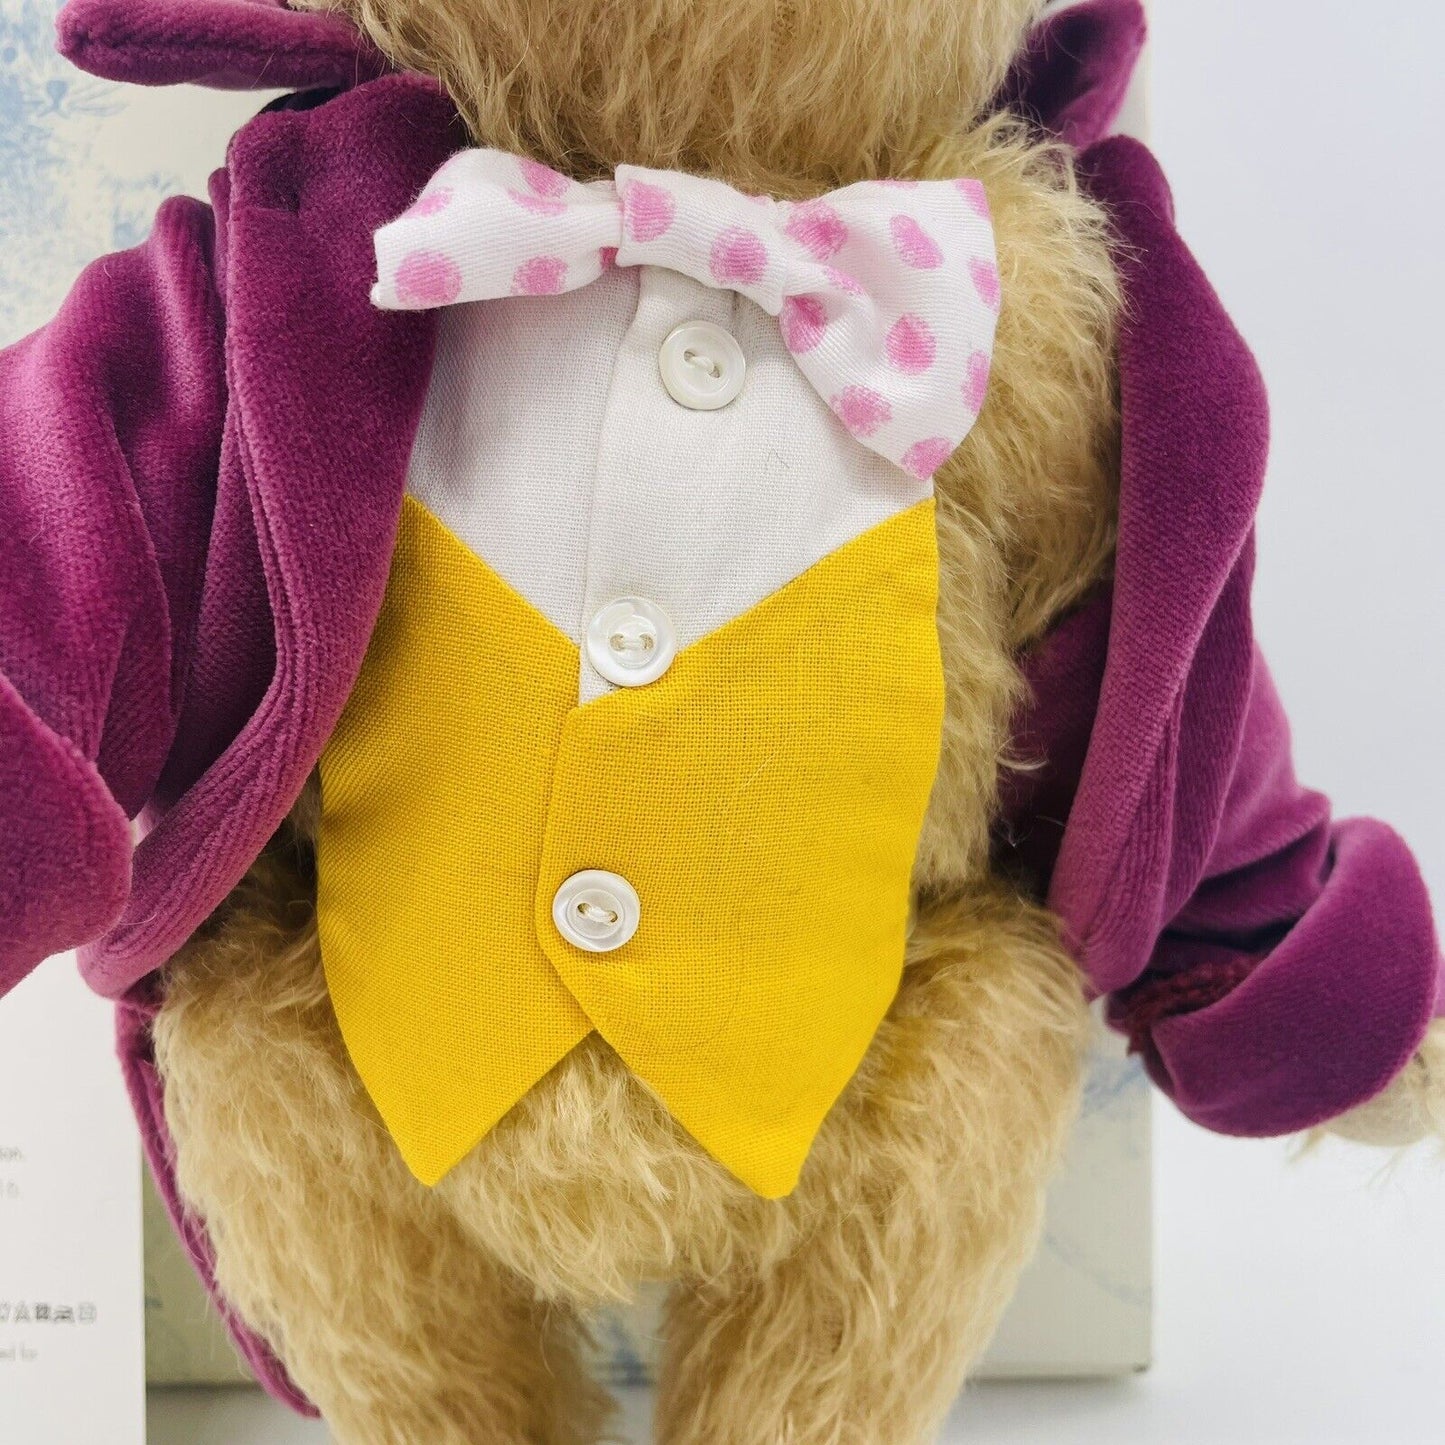 Steiff Teddybär Willy Wonka 664939 limitiert 1916 aus 2016 UK und Irland 28cm